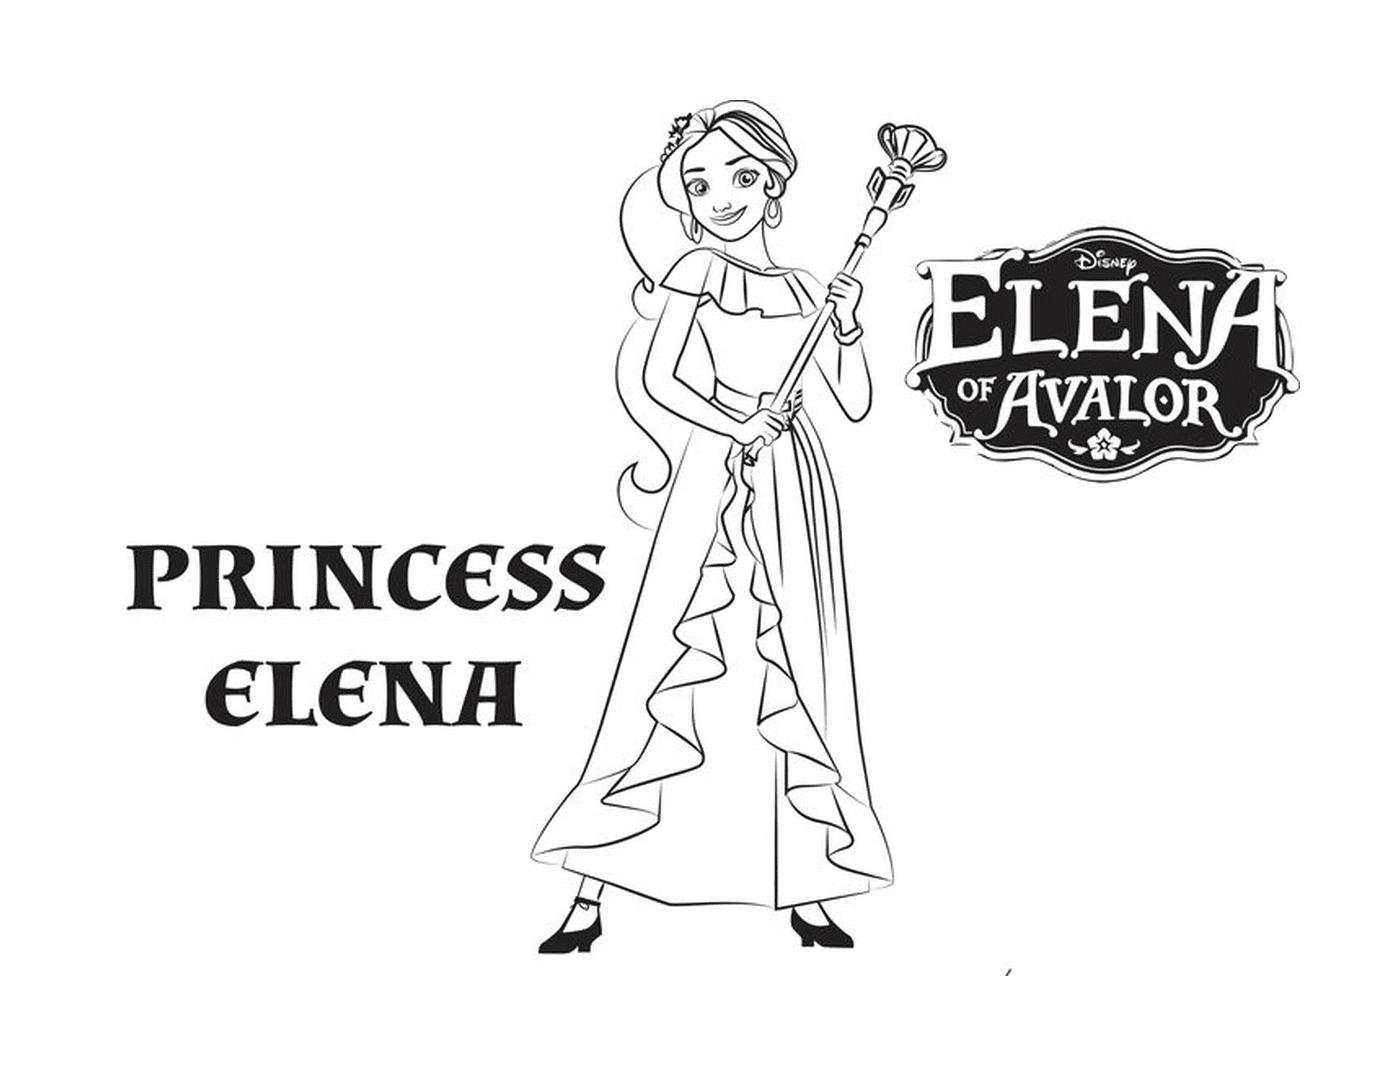   Princesse Elena d'Avalor de Disney 